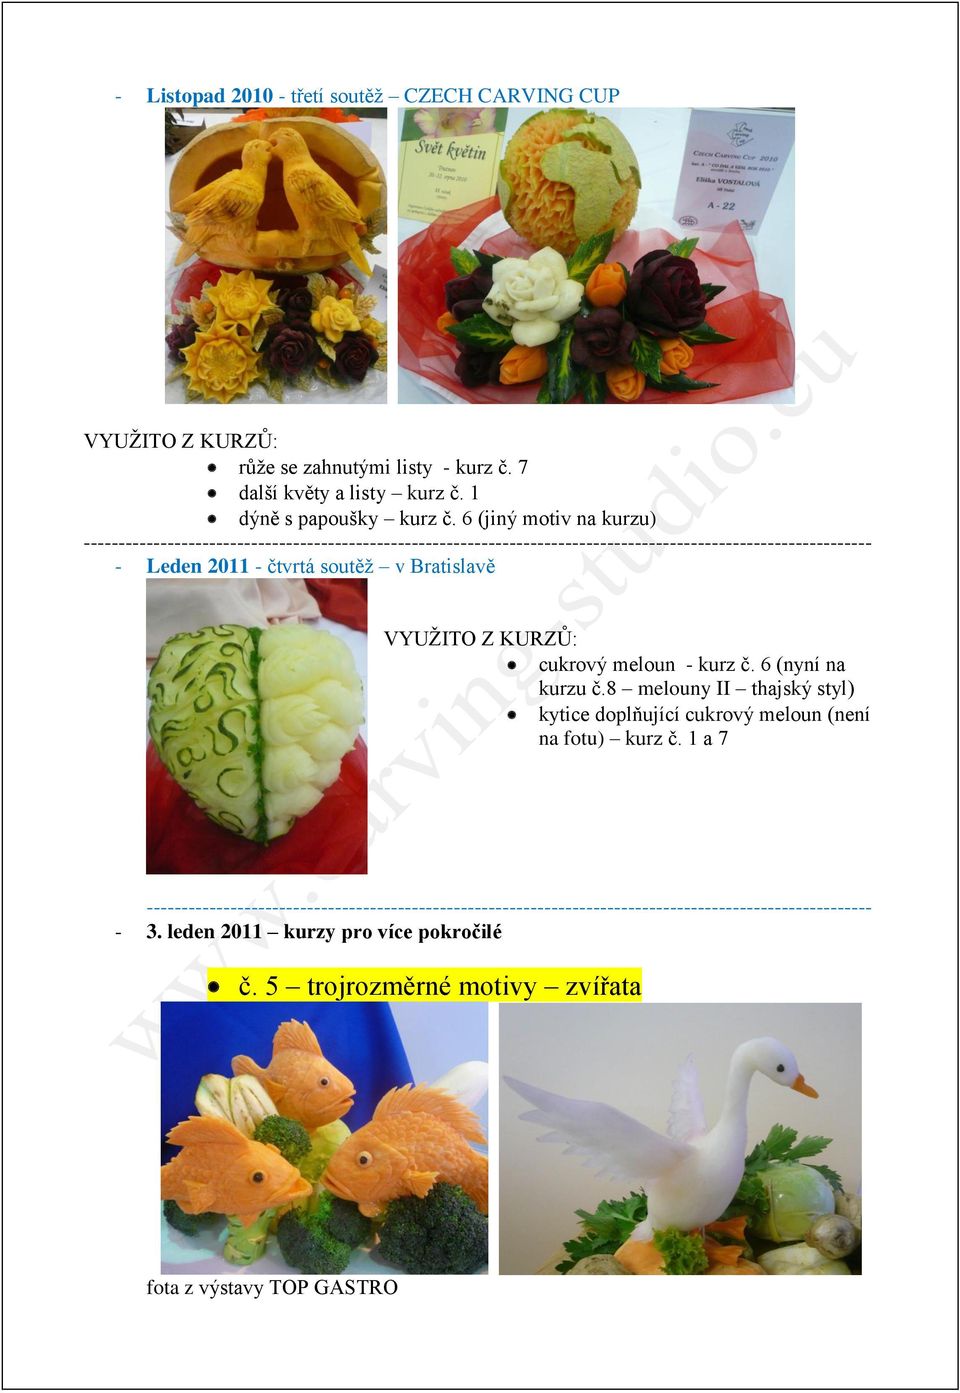 soutěž v Bratislavě cukrový meloun - kurz č. 6 (nyní na kurzu č.8 melouny II thajský styl) kytice doplňující cukrový meloun (není na fotu) kurz č.